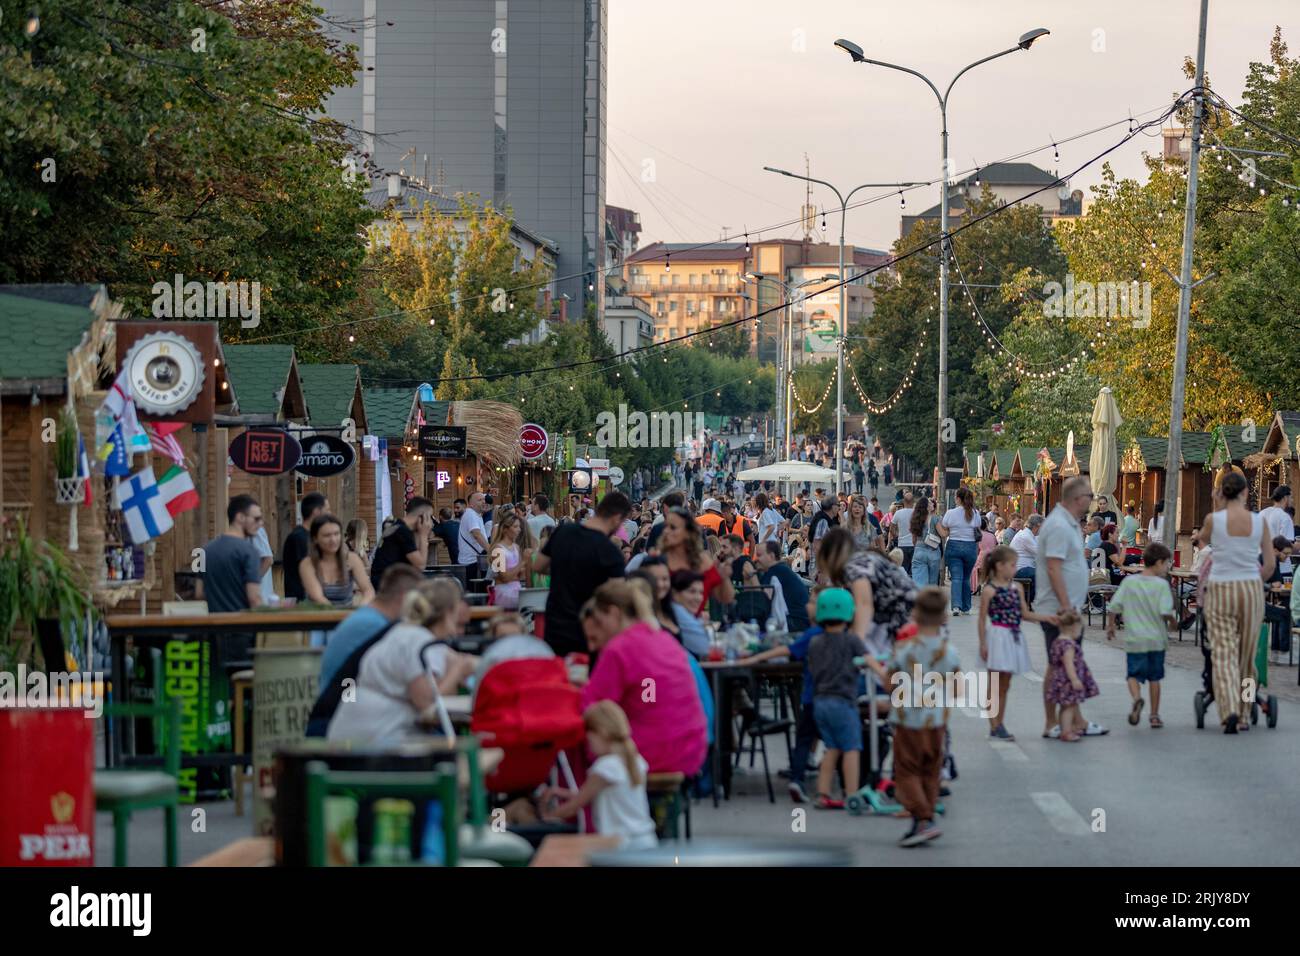 Der Sommer nähert sich seinem Ende und die Menschen genießen die letzten Wochen auf dem belebten Lebensmittelmarkt in der Innenstadt von Prishtina, der Hauptstadt des Kosovo, wie am Mittwoch gefangen genommen Stockfoto